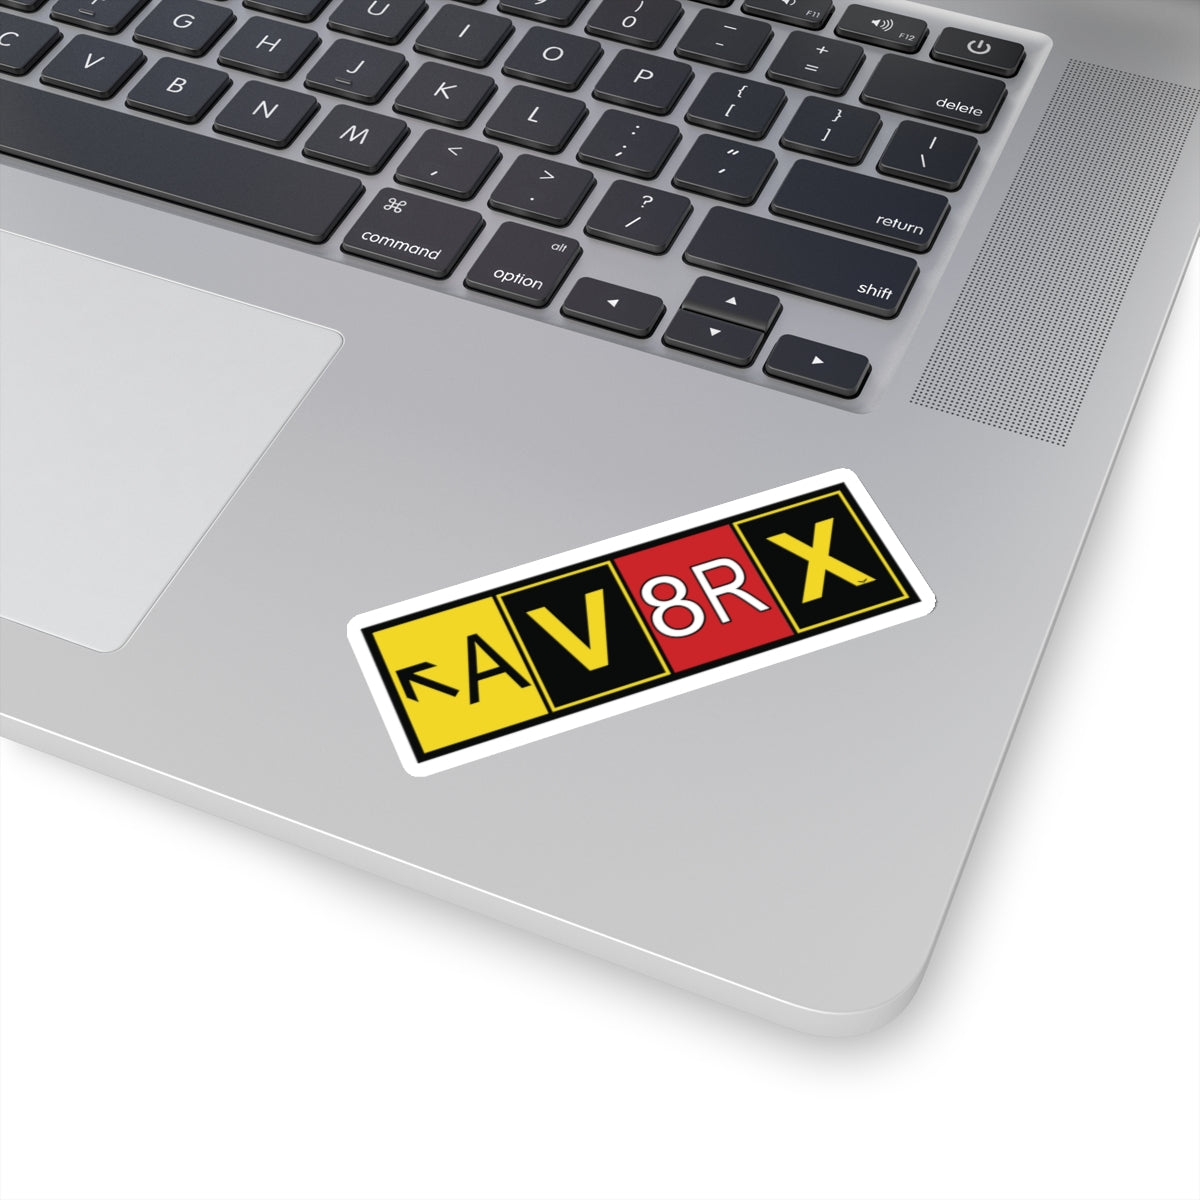 Aviatrix - AV8RX - sticker